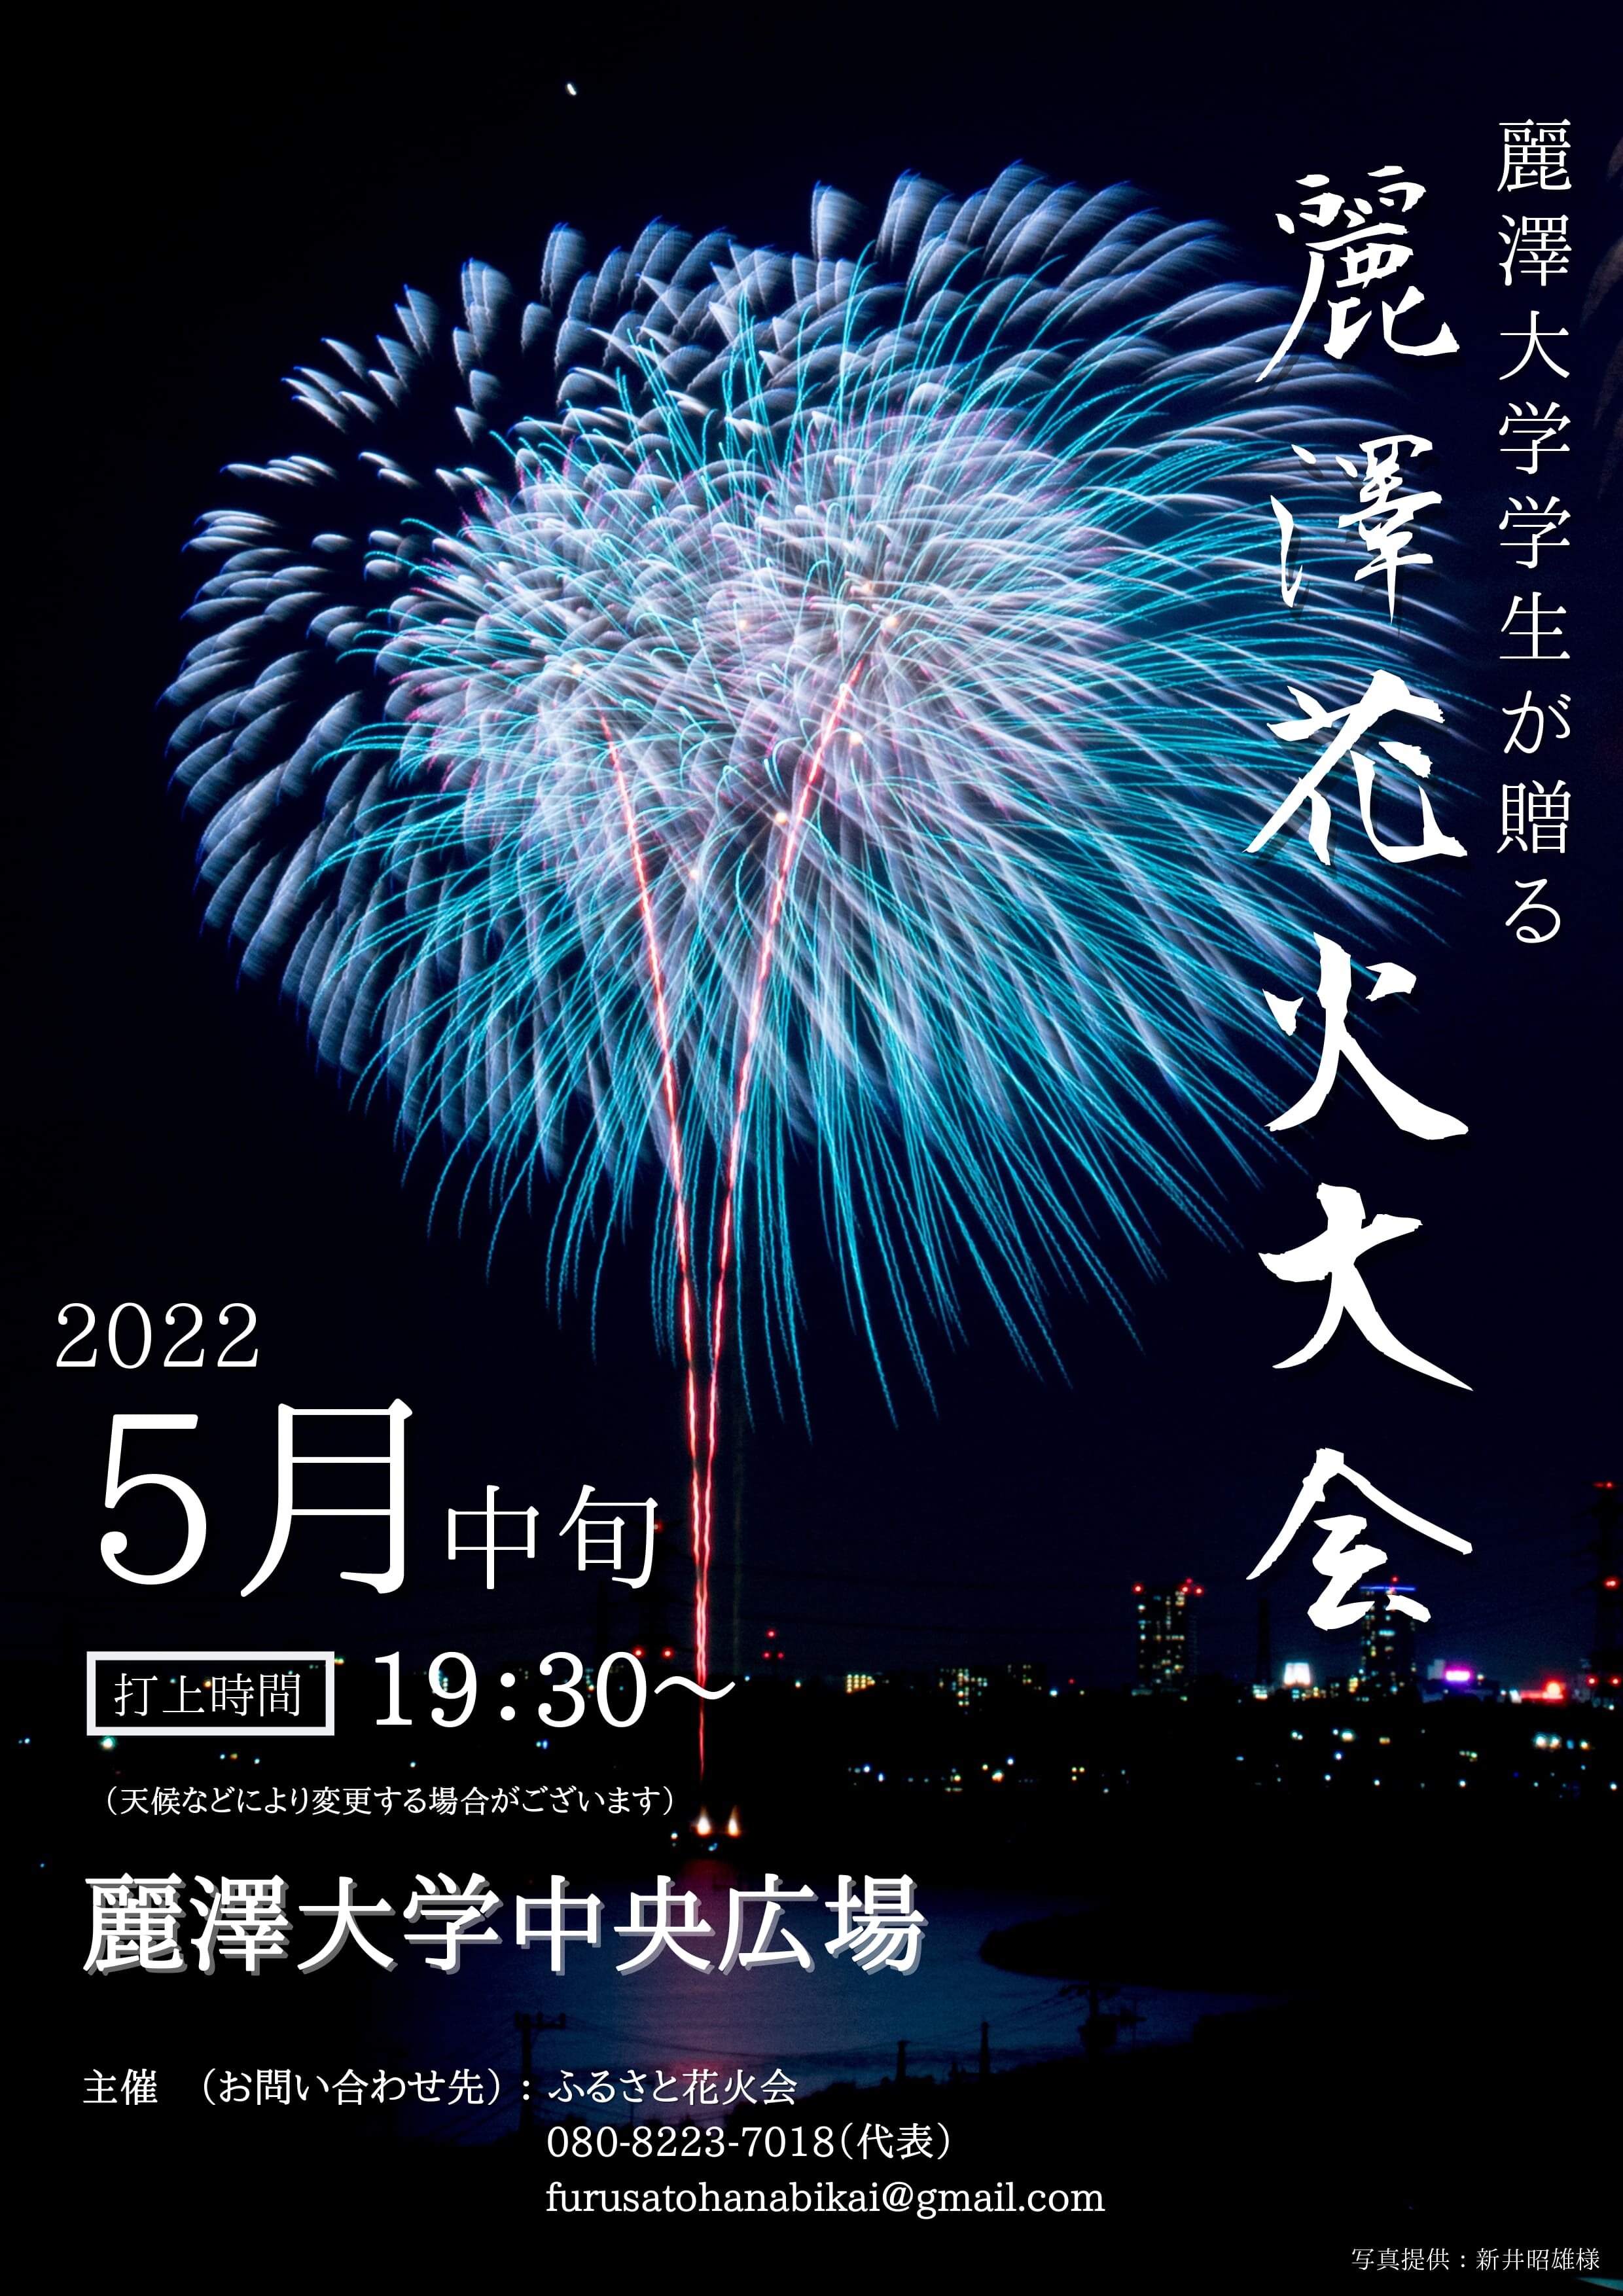 【ニュースリリース】大切な人と一緒に、思い出の1ページを 柏市の夜空に輝け 麗澤大学生が贈る『麗澤花火大会』